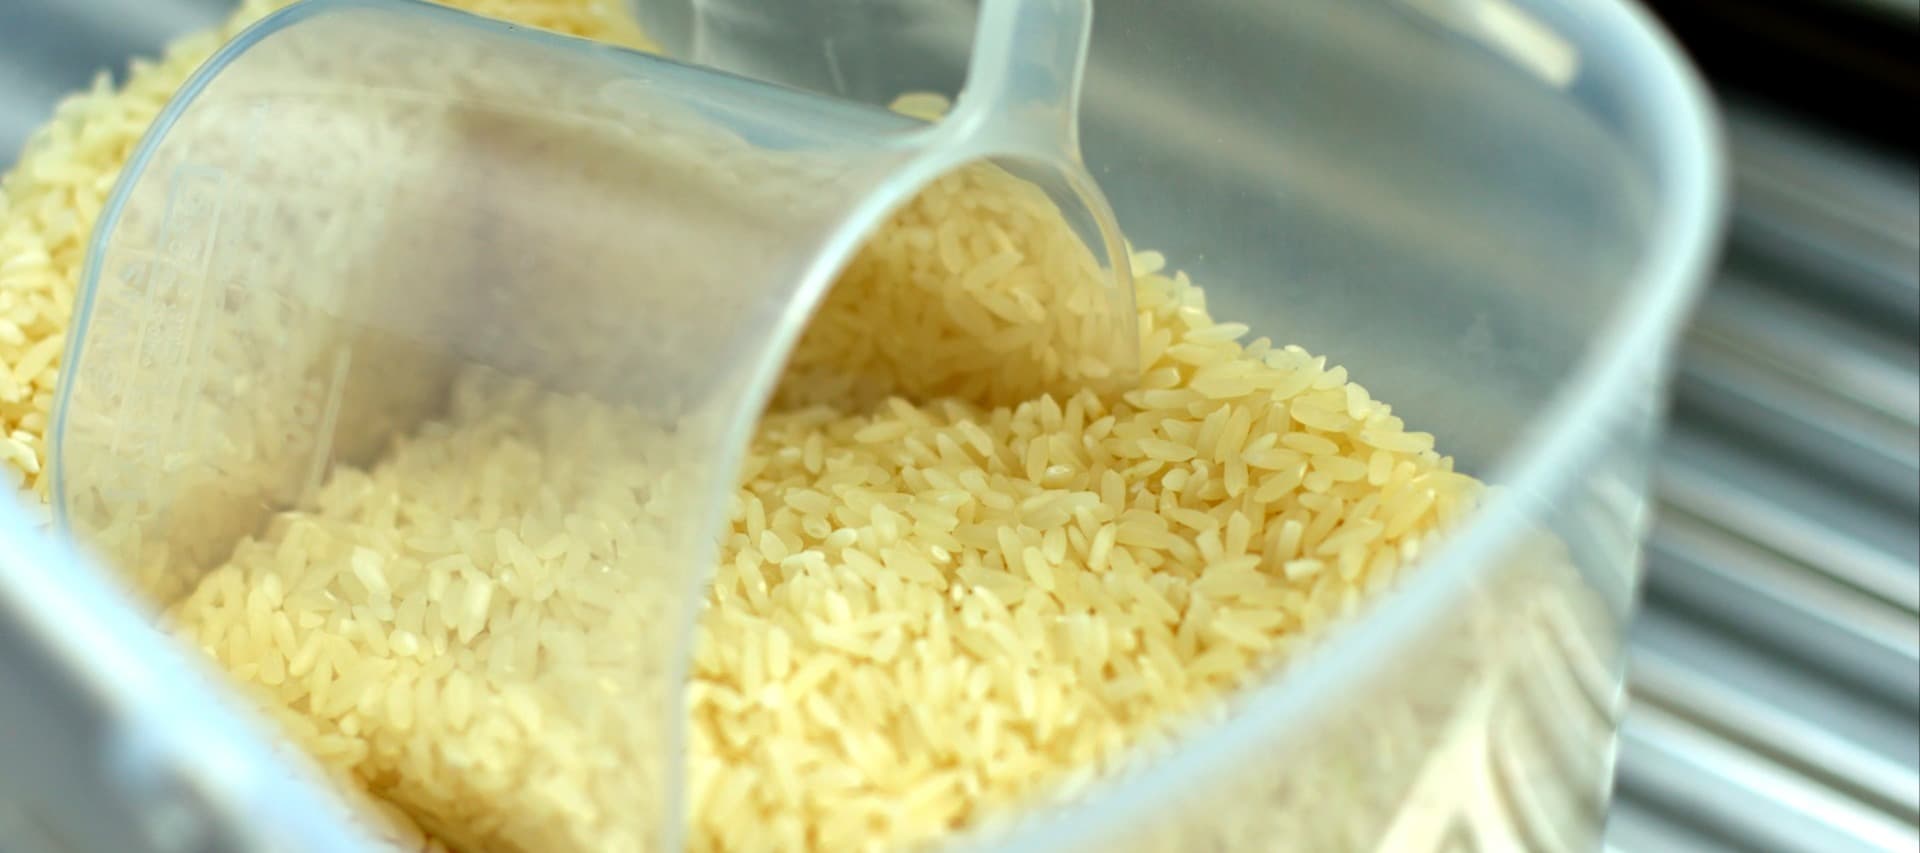 Фото новости: "Правительство Индии может запретить около 80% экспорта риса"